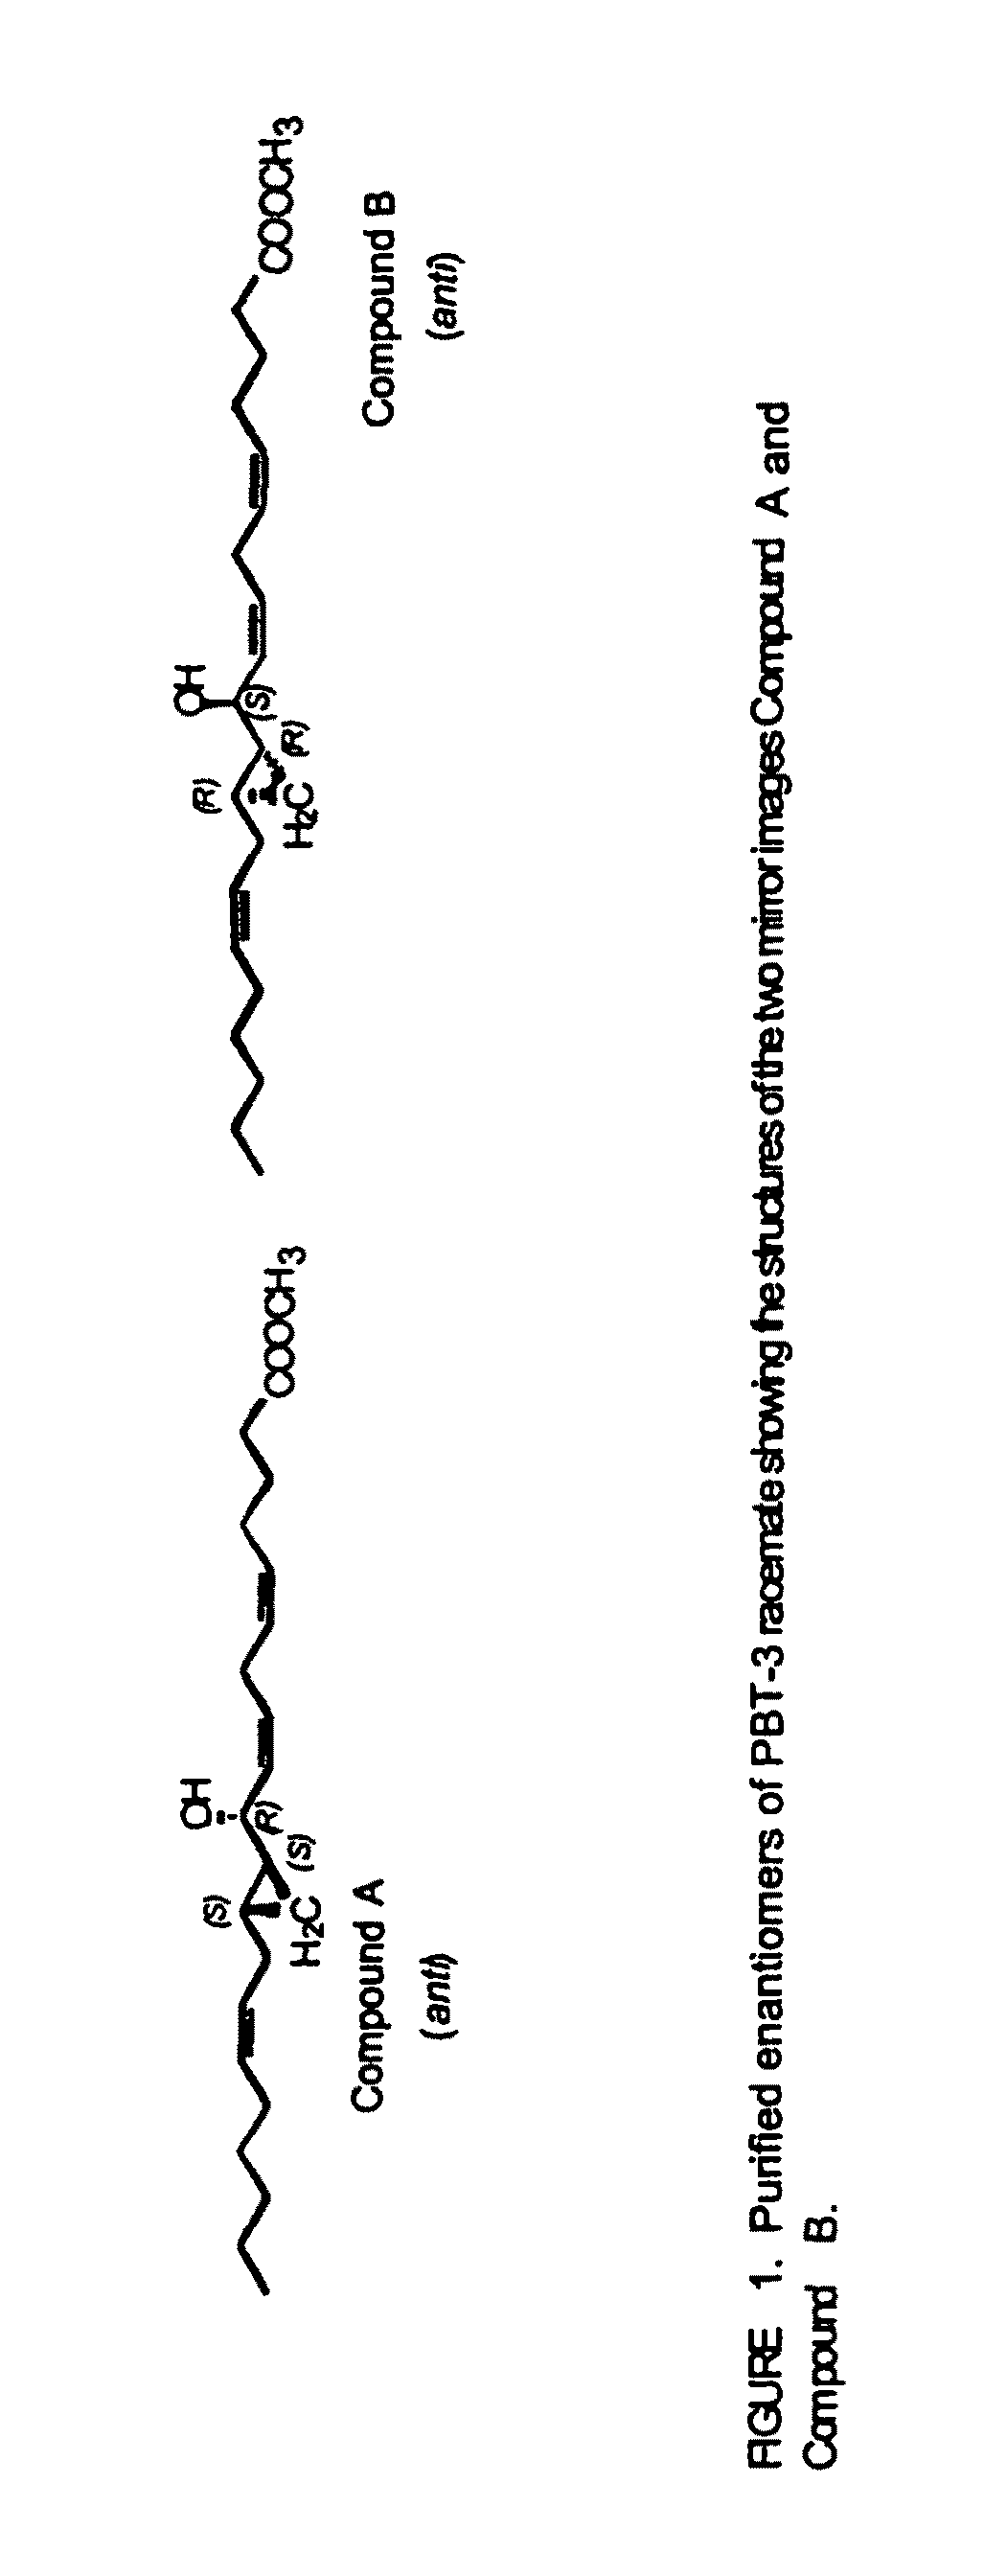 Hepodxilin analog enantiomers